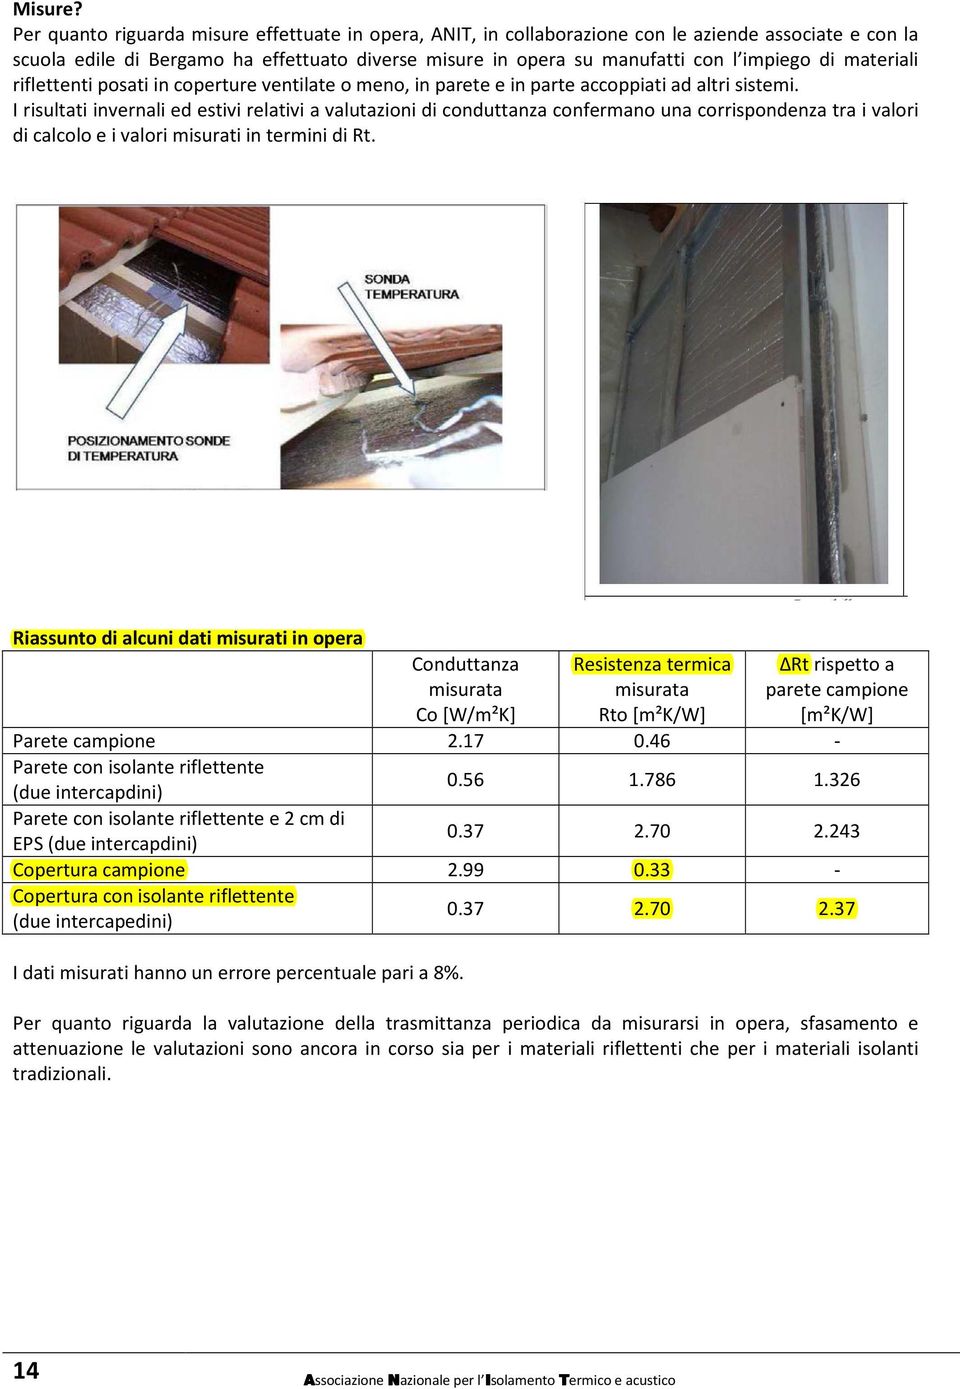 materiali riflettenti posati in coperture ventilate o meno, in parete e in parte accoppiati ad altri sistemi.